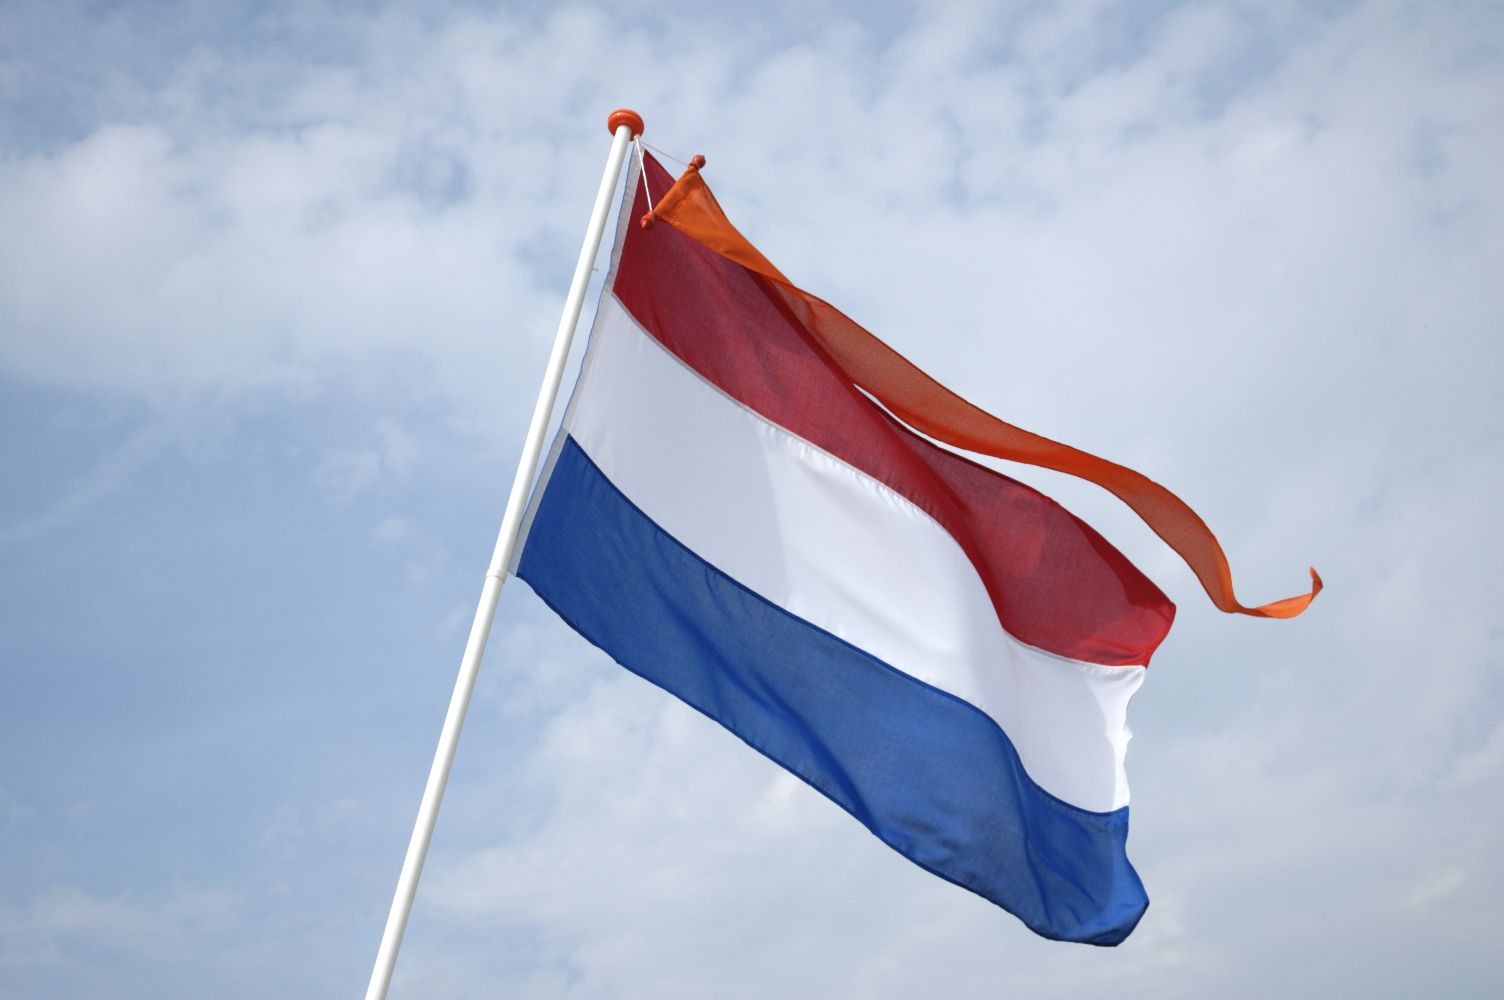 vlaginstructie Archieven Koningsdag 2019 & Koningsnacht 2019